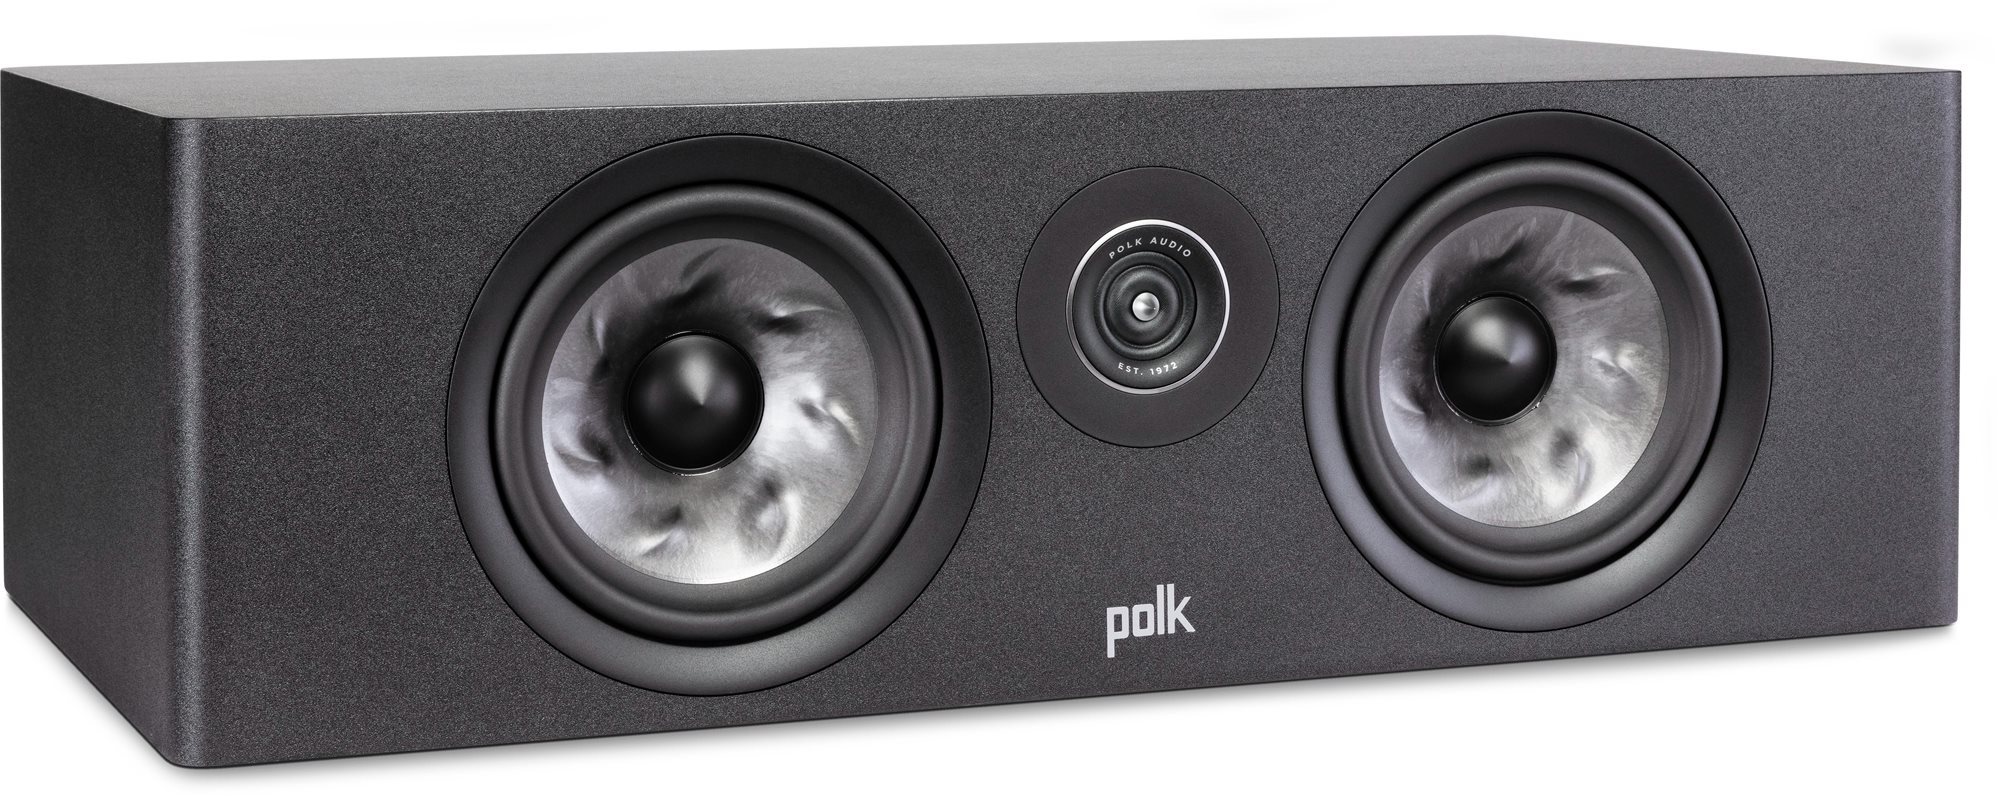 Polk audio polk reserve r400c fekete (darab)